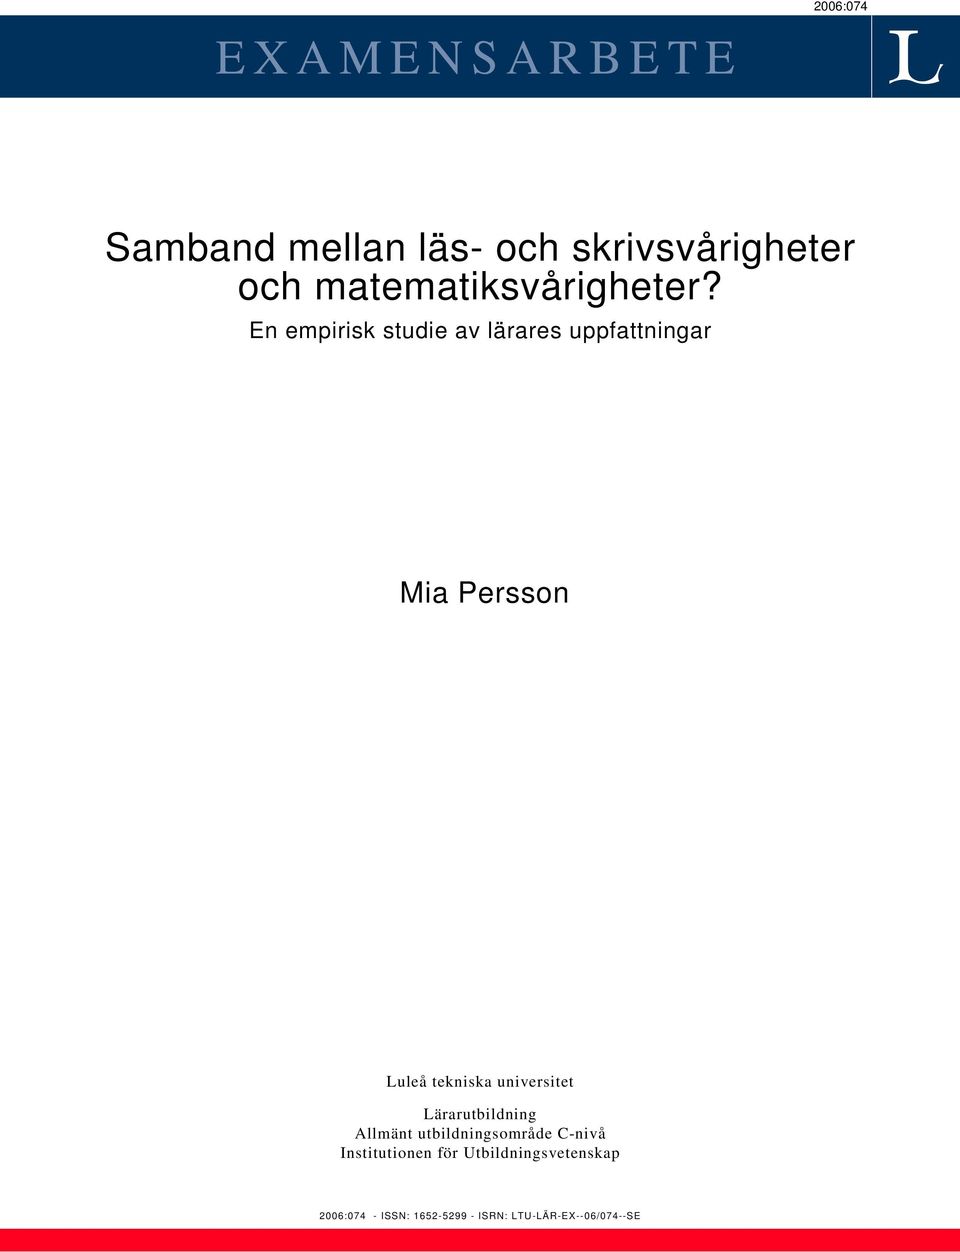 En empirisk studie av lärares uppfattningar Mia Persson Luleå tekniska